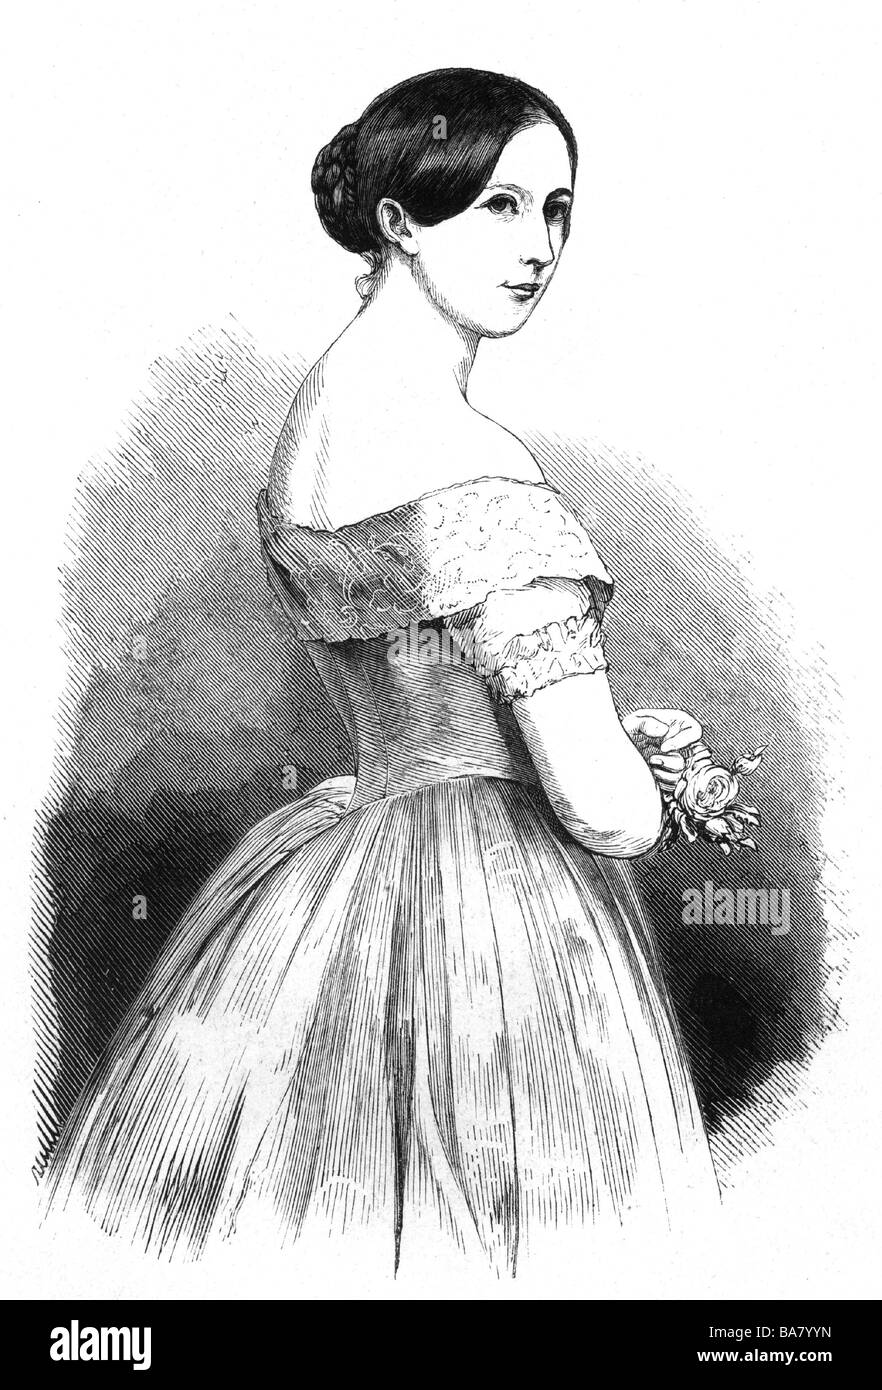 Hagn, Charlotte von, 4.11.1909 - 22.4.1881, attrice tedesca, mezza lunghezza, incisione, 1853, Foto Stock